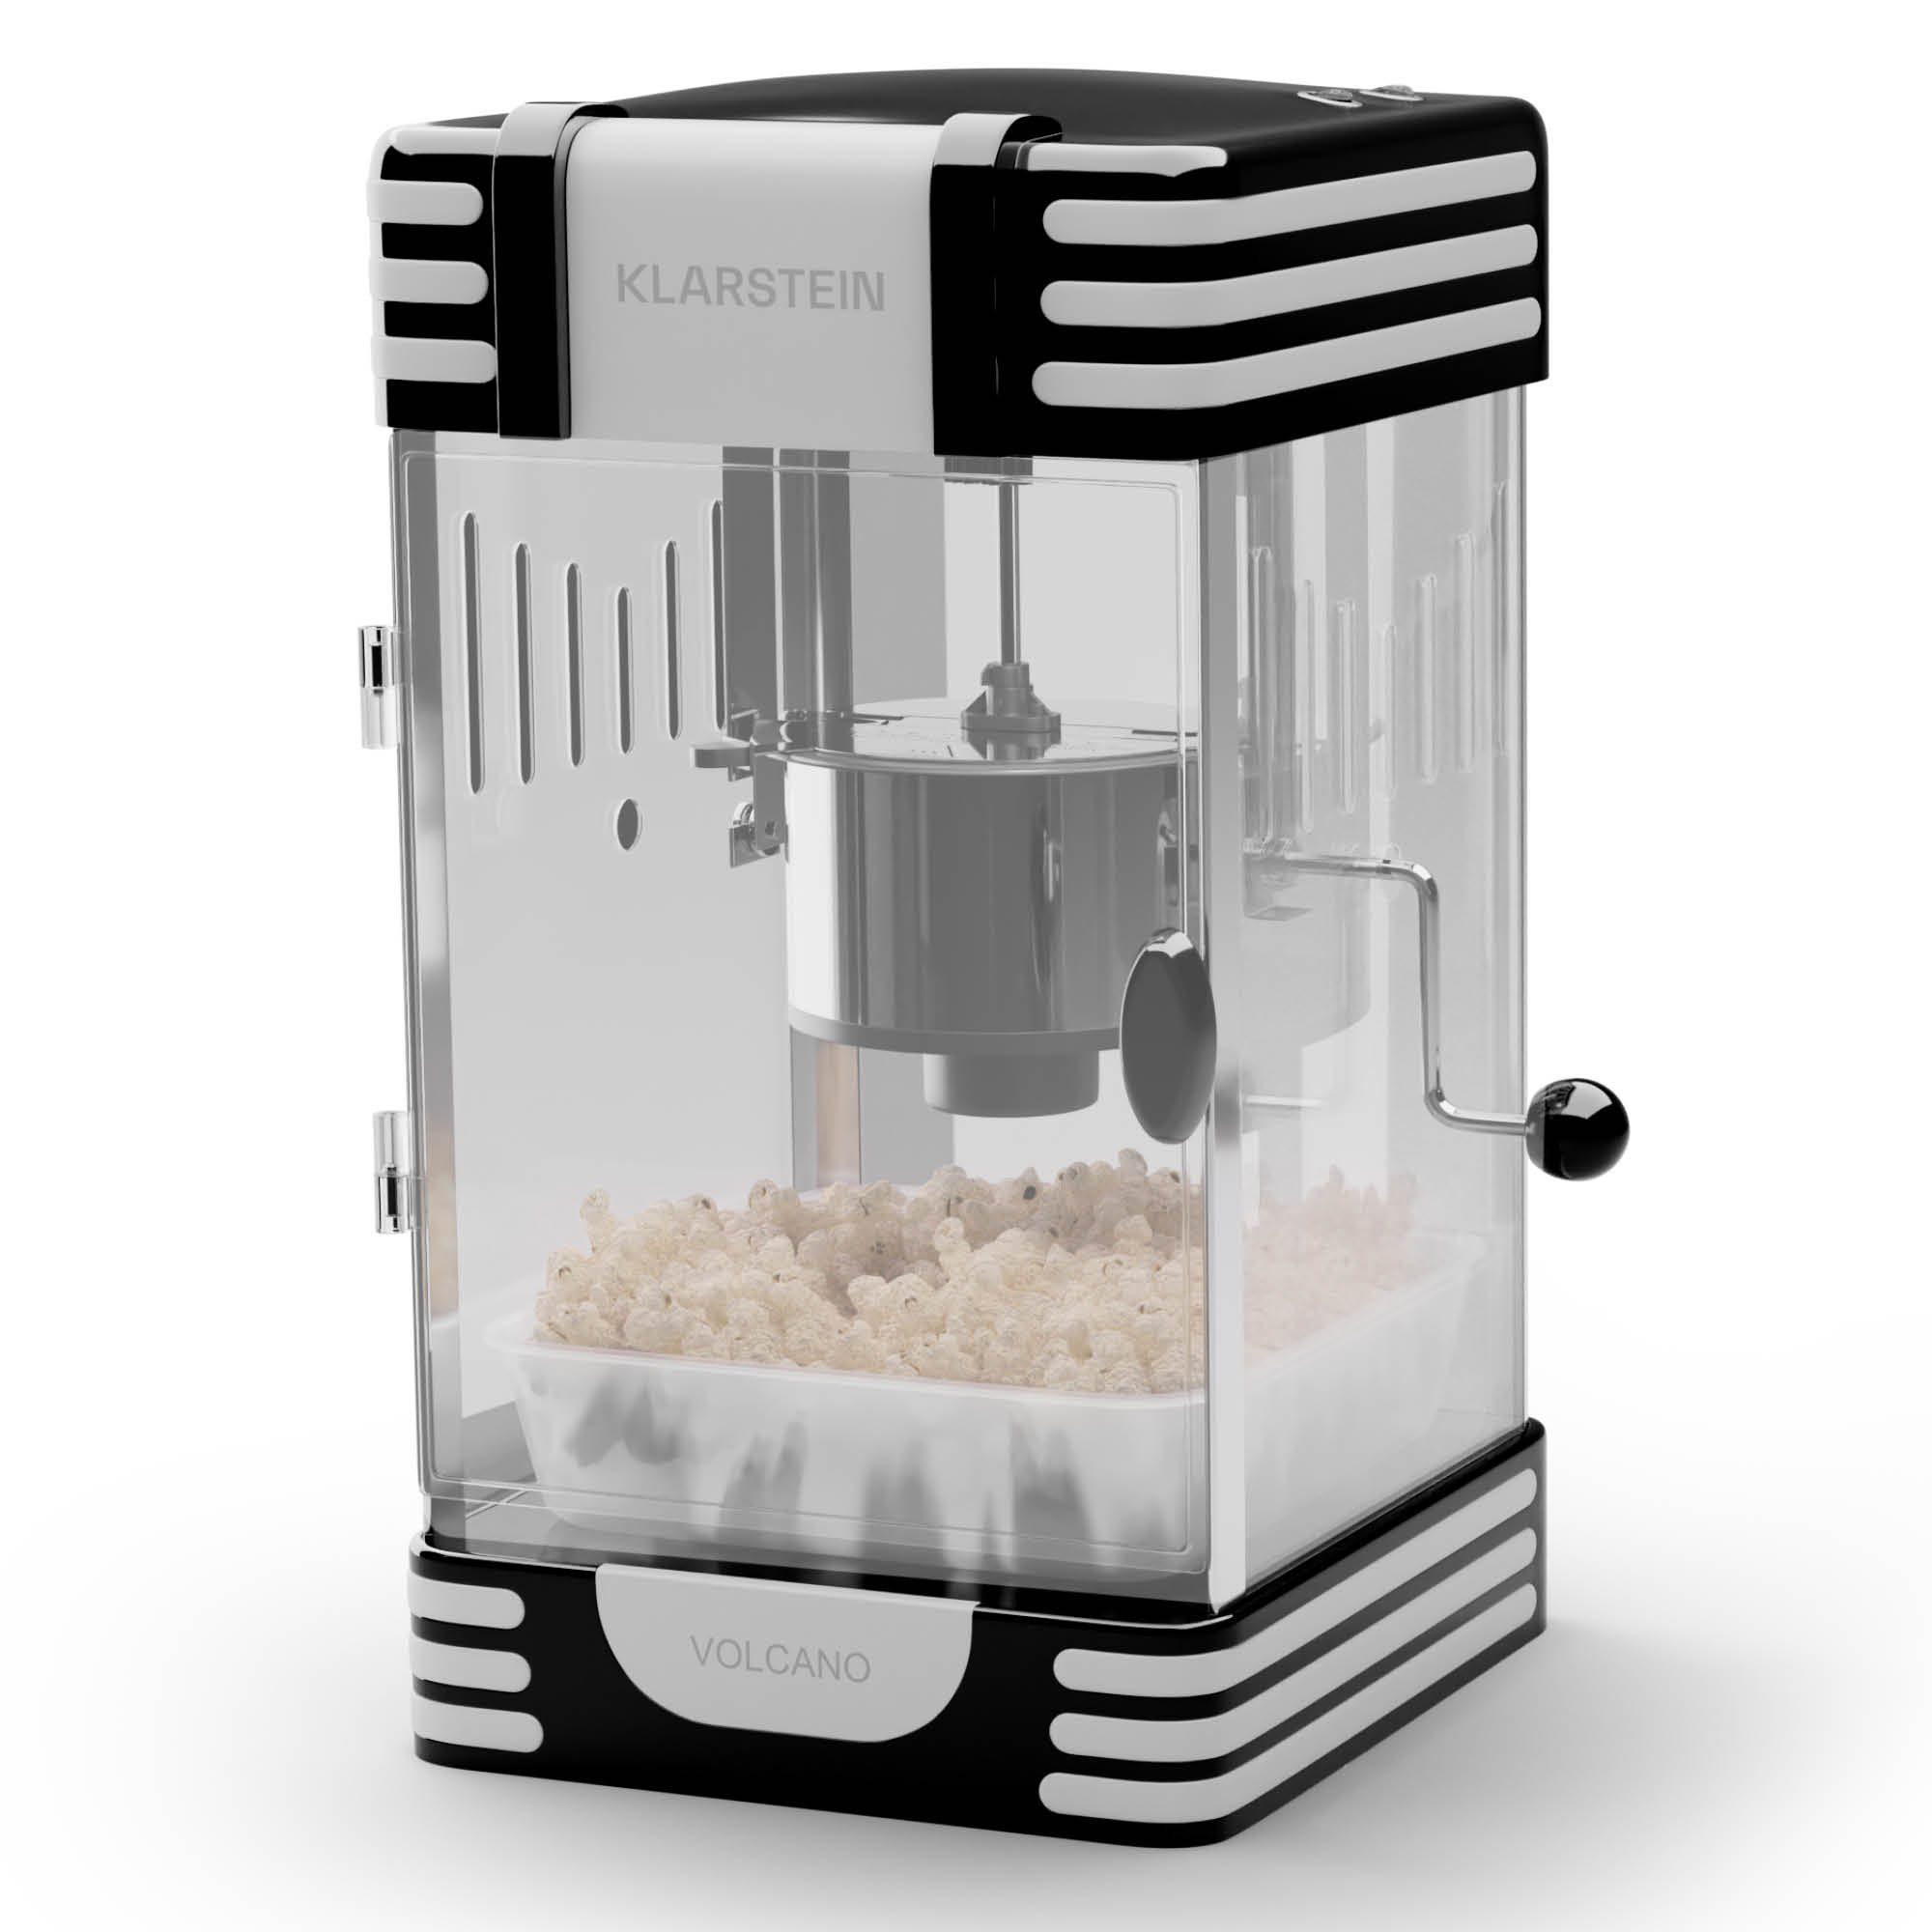 Klarstein Popcornmaschine Volcano, Popcornmaker Popcornautomat Popkornmaschine Popcorn mit Öl Schwarz